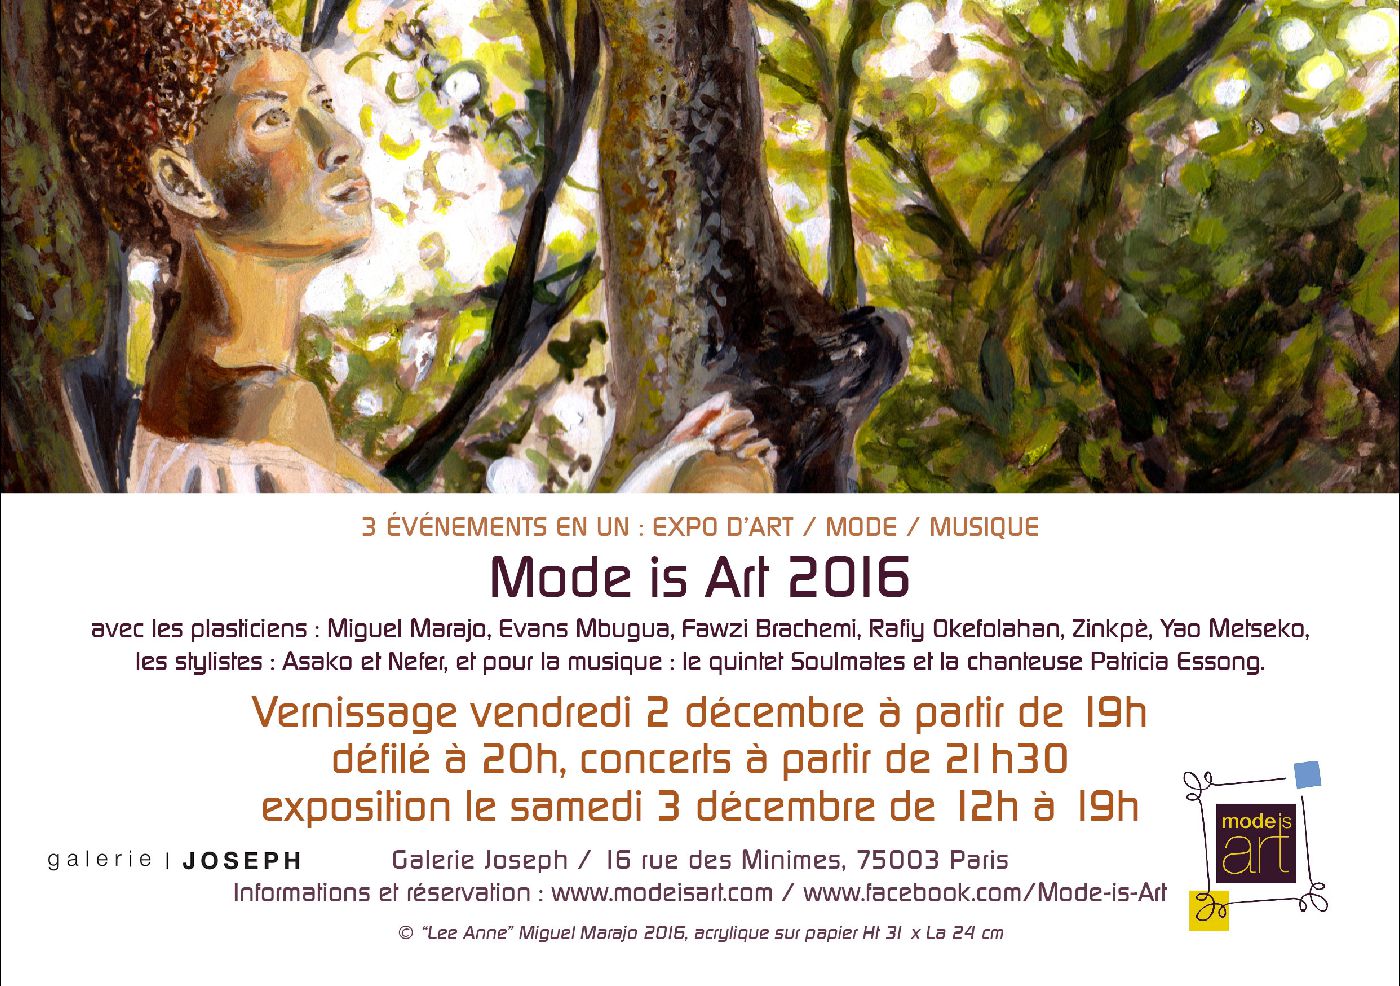 Miguel Marajo participe à Mode is Art 2016 / Paris